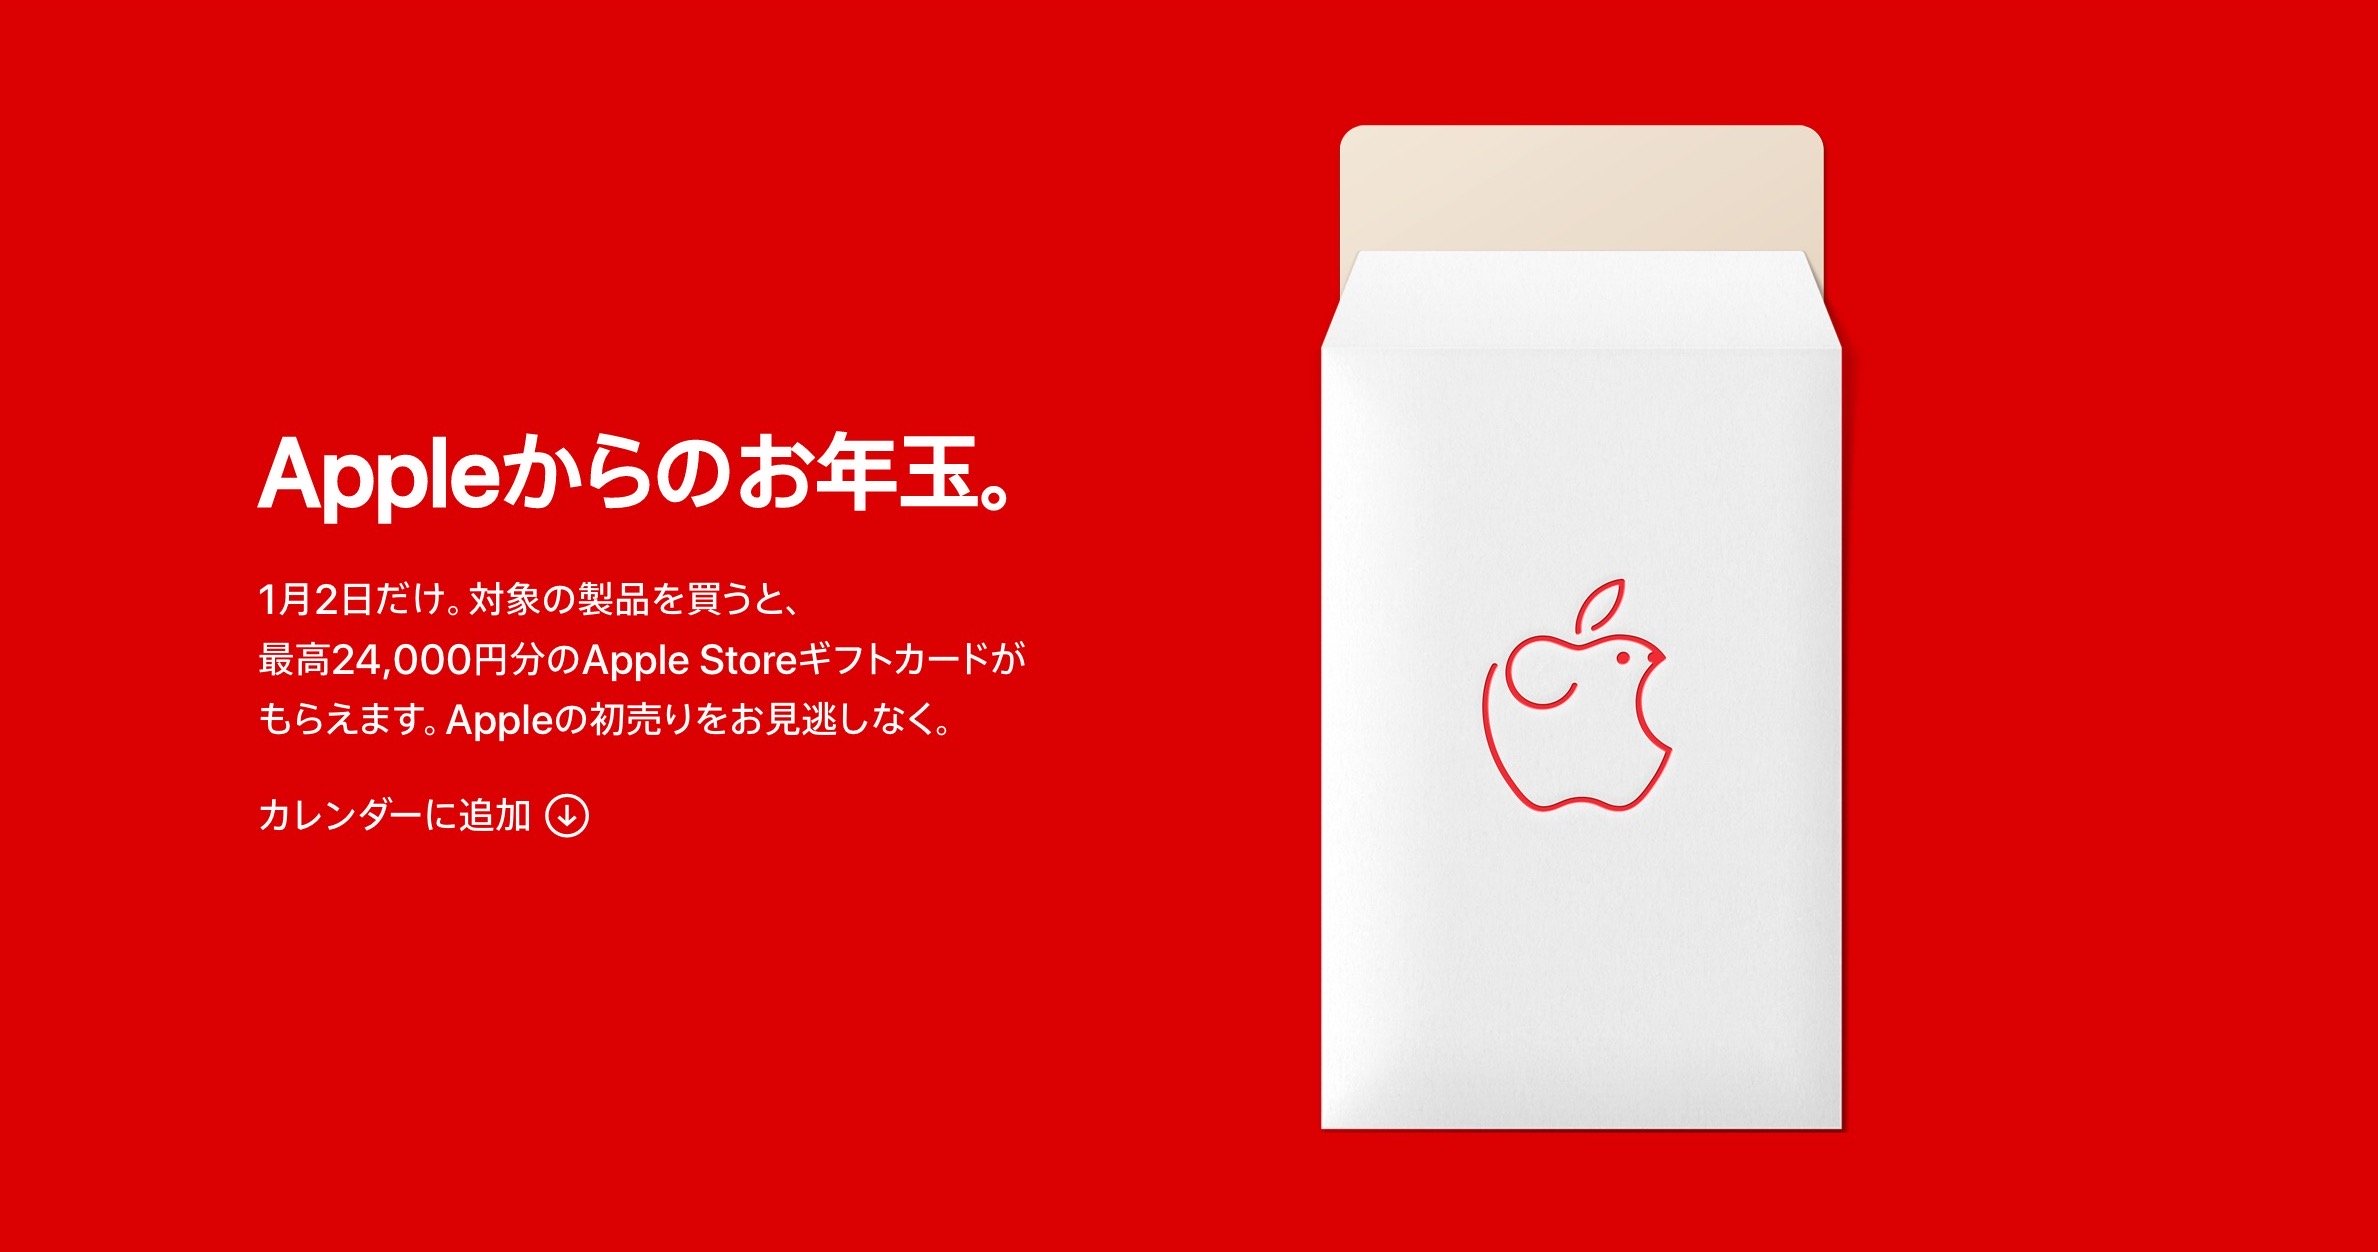 Apple、2020年の初売りを予告。最大2.4万円のギフトカードプレゼント